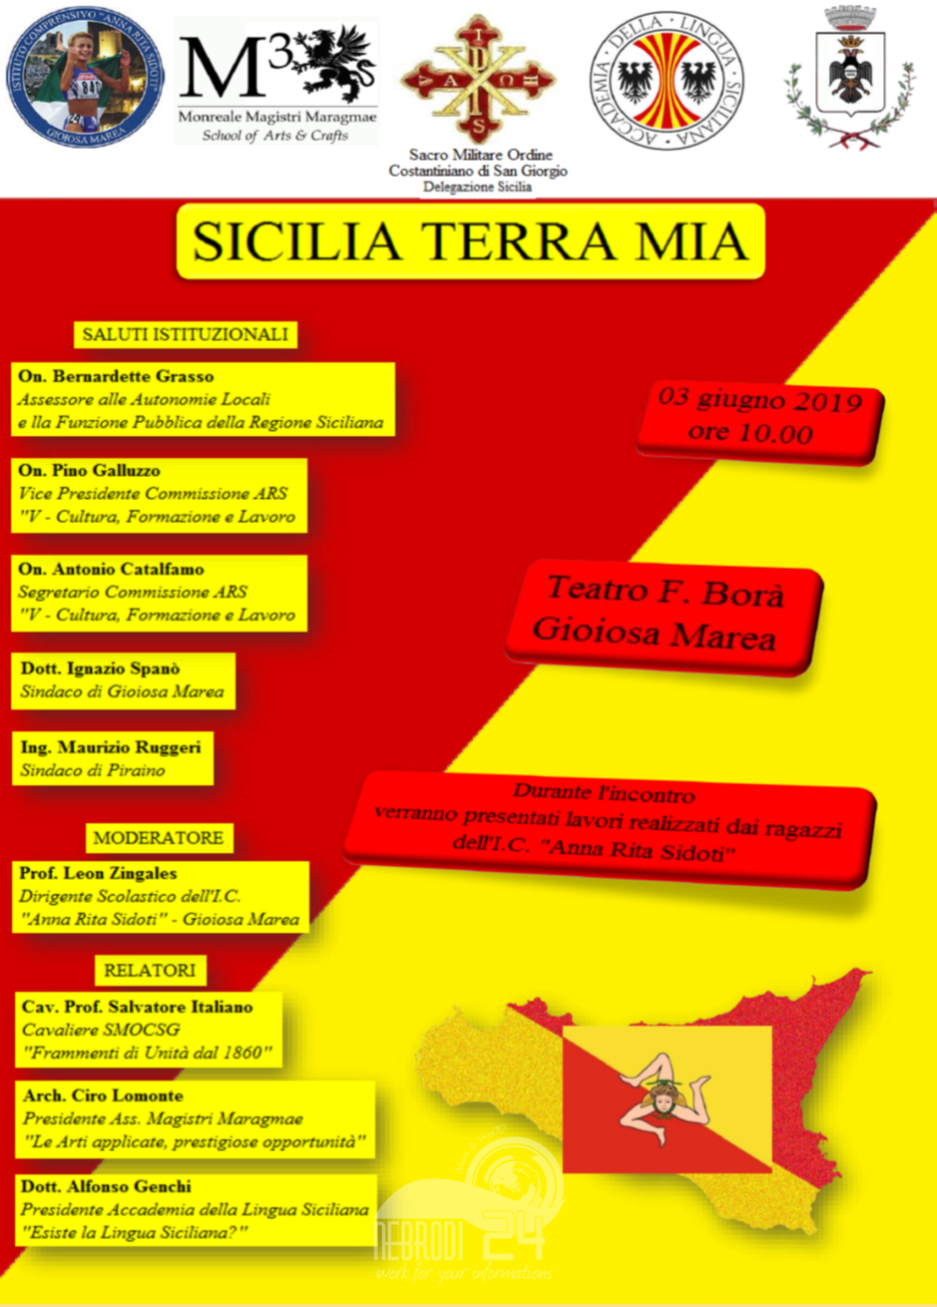 Gioiosa Marea – Sicilia Terra Mia, il prossimo 3 giugno a teatro F.Borà